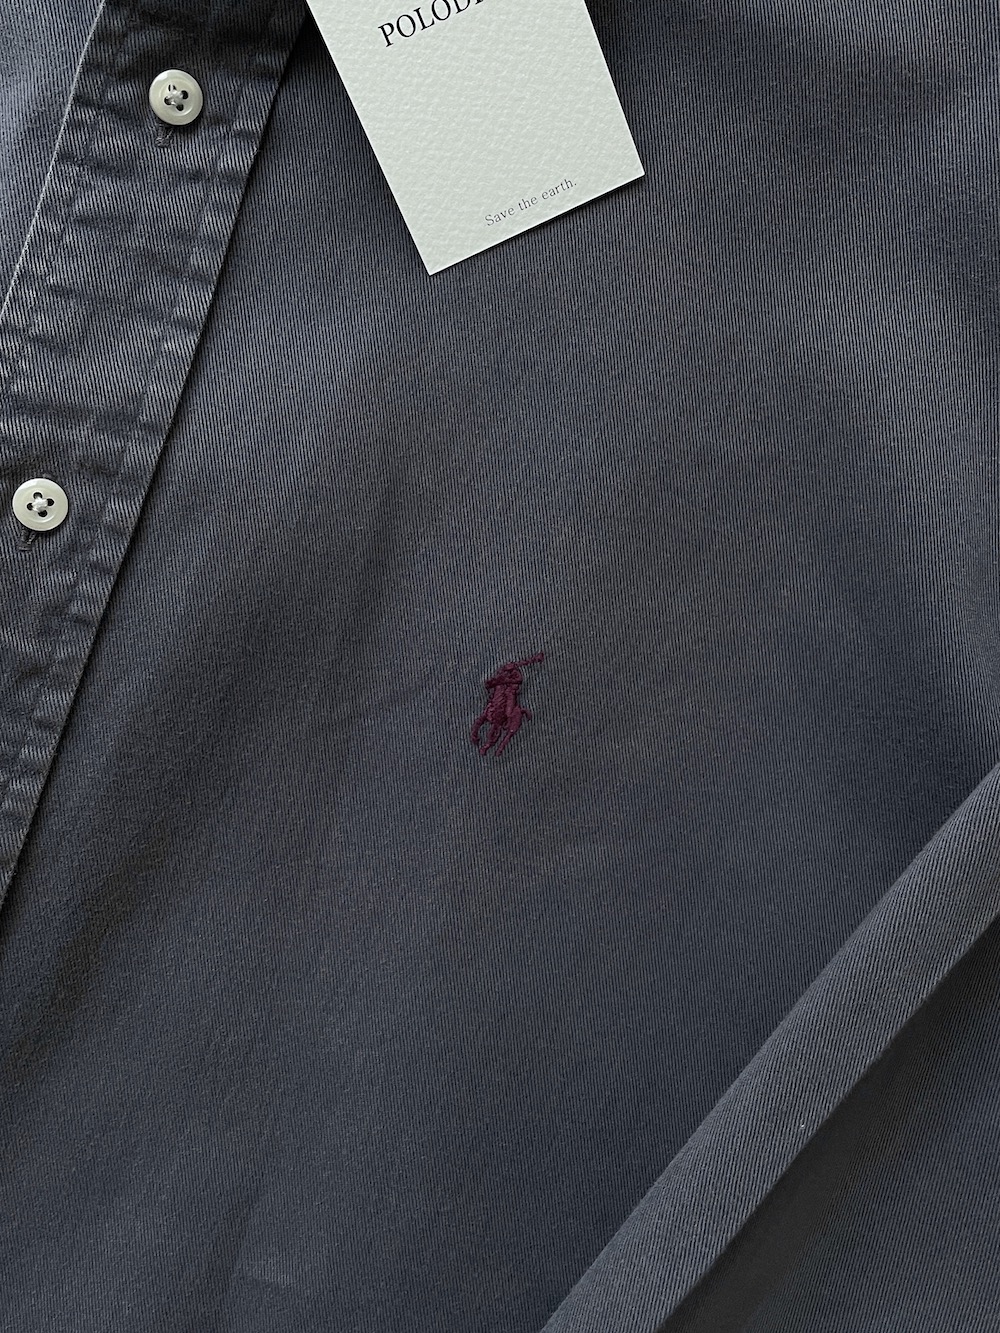 [ XL ] Polo Ralph Lauren Shirt (5986)